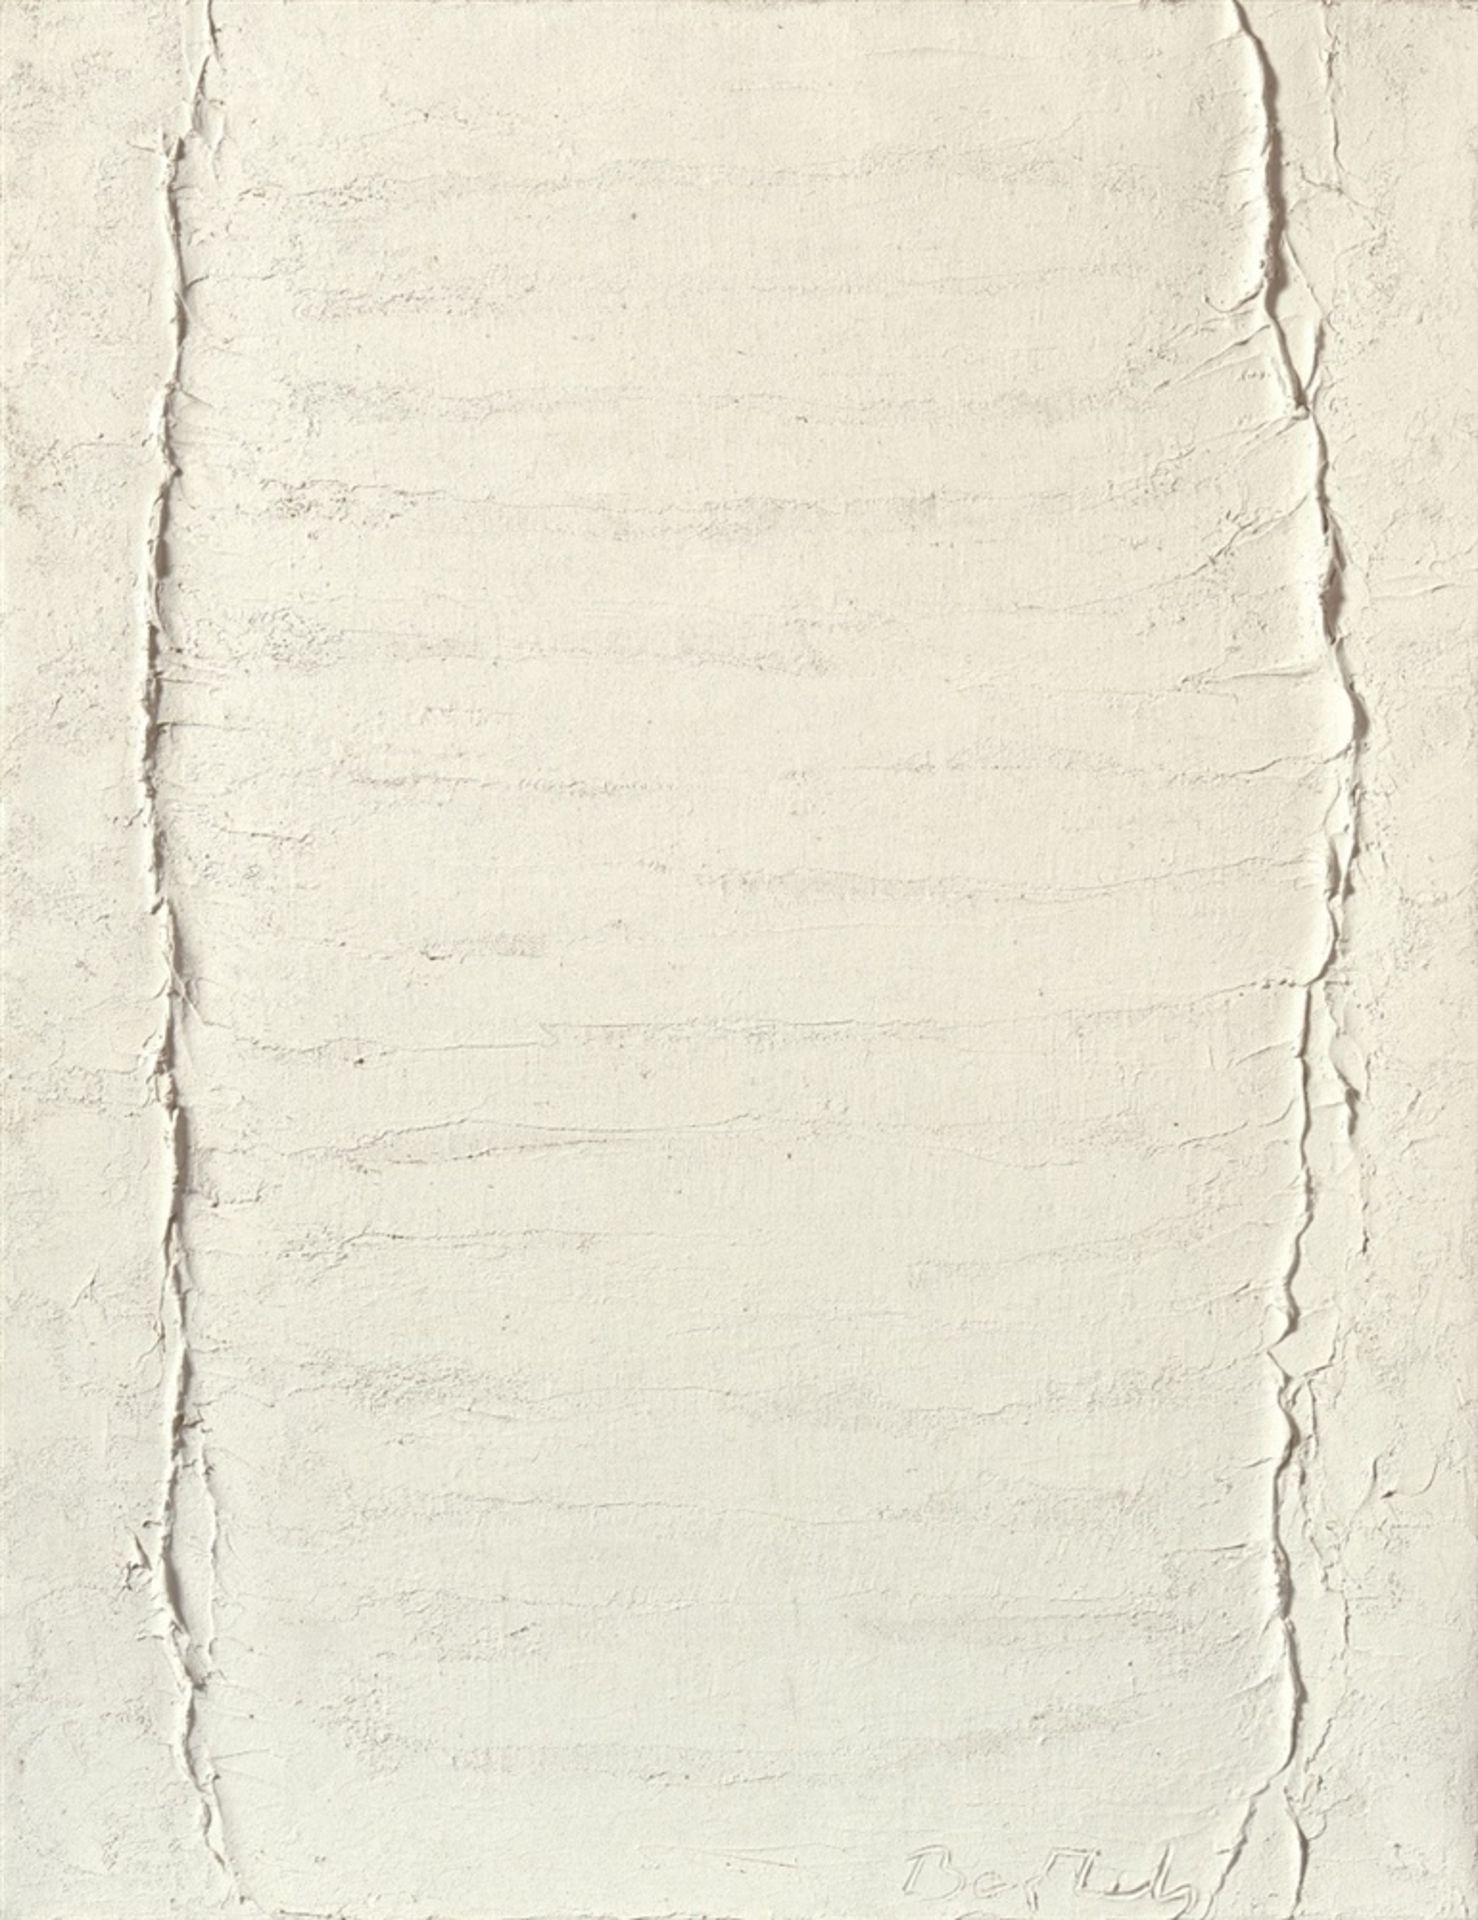 Hermann BartelsNo. 110Harzfarbe auf Leinwand 90 x 70 cm. Geritzt signiert 'Bartels'. Rückseitig